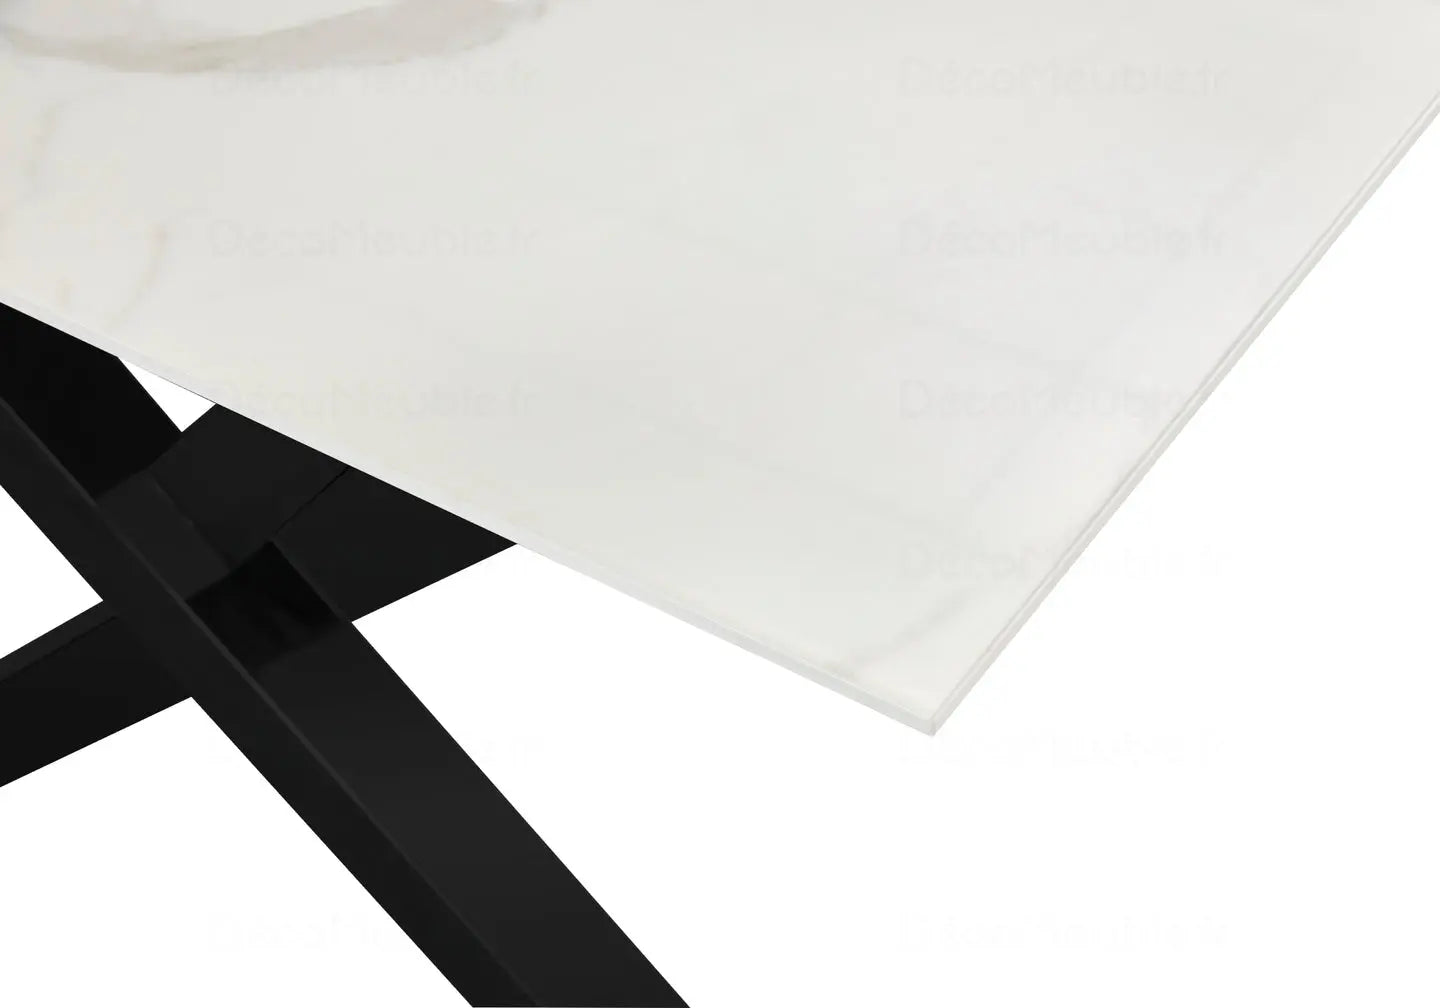 Table à manger marbre blanc pied noir CROSS New Design